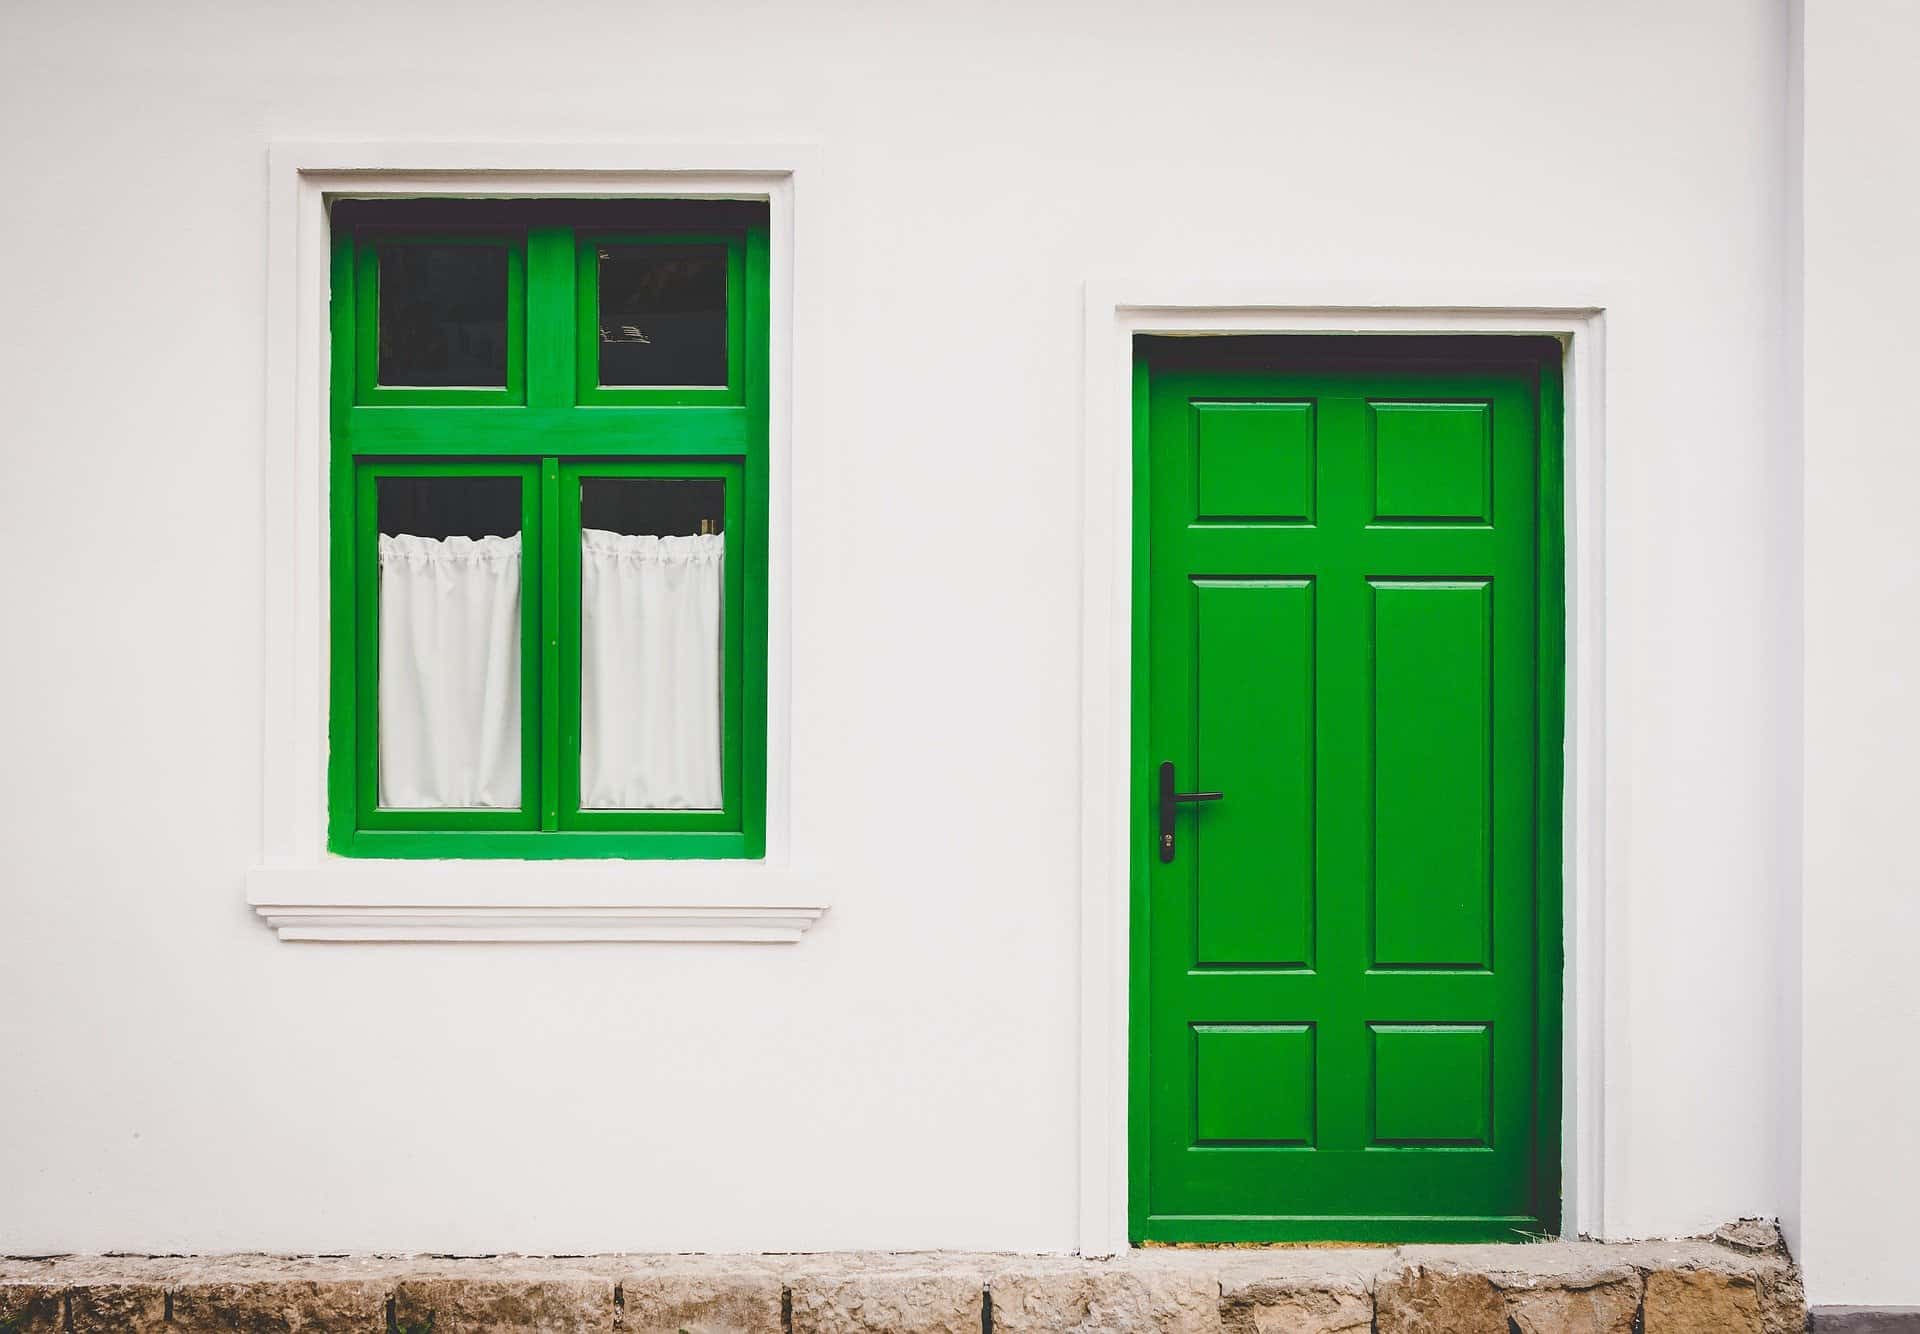 Vit fasad med grön dörr och grön fönsterkarm